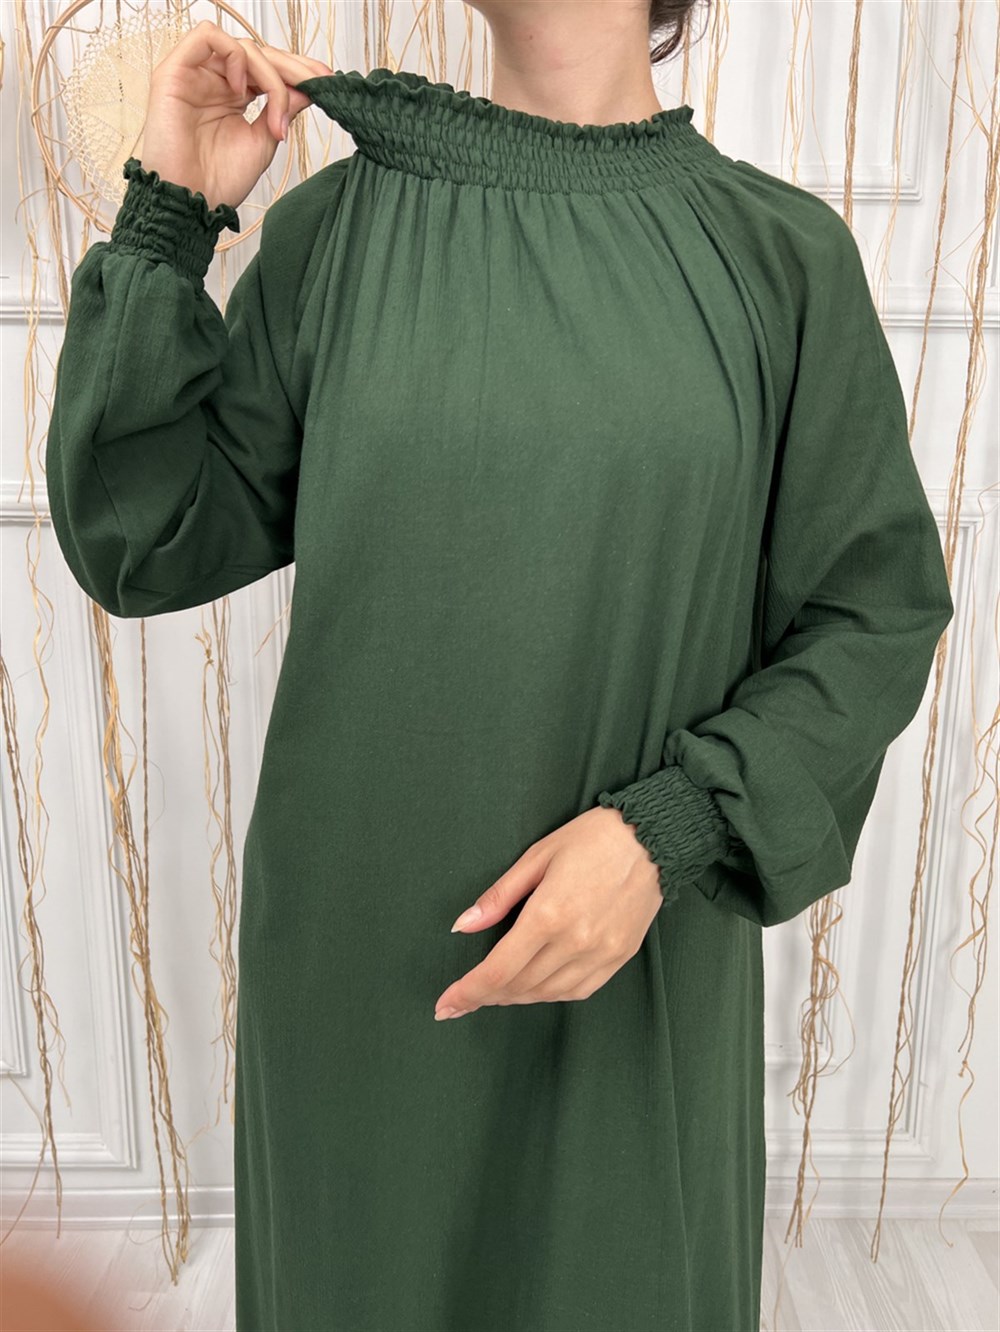 Toptan Kadın Şile Bezi Pamuk Namaz Elbisesi Tek Parça Kolay Boydan Giyilen  Kolu ve Yakası Lastikli Yeşil | silebezi.com.tr